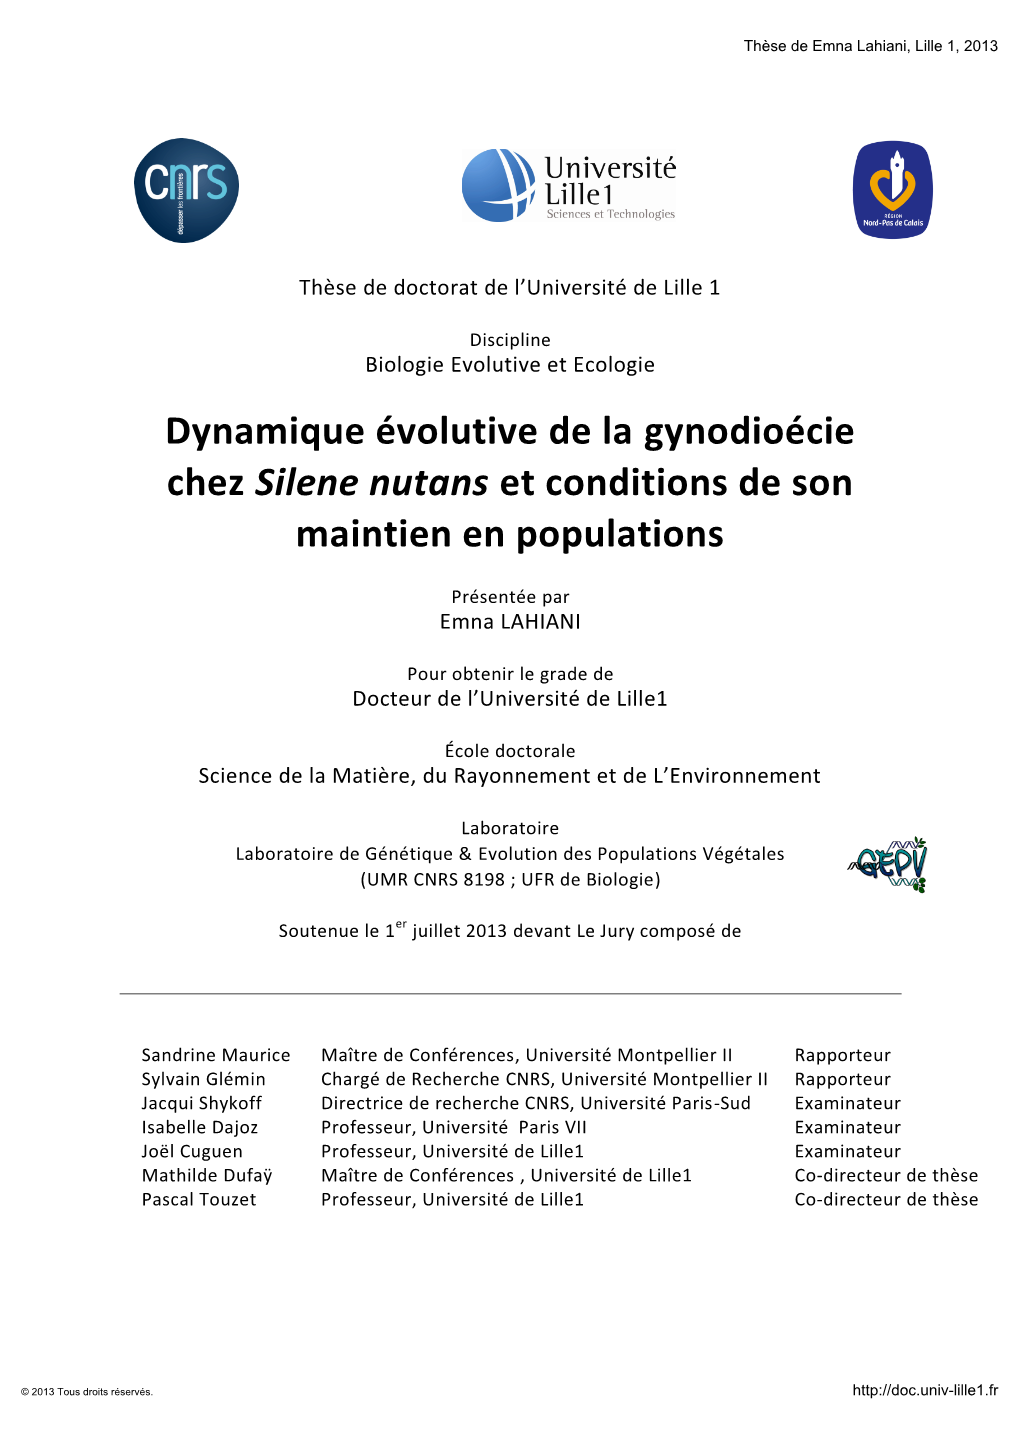 Dynamique Évolutive De La Gynodioécie Chez Silene Nutans Et Conditions De Son Maintien En Populations